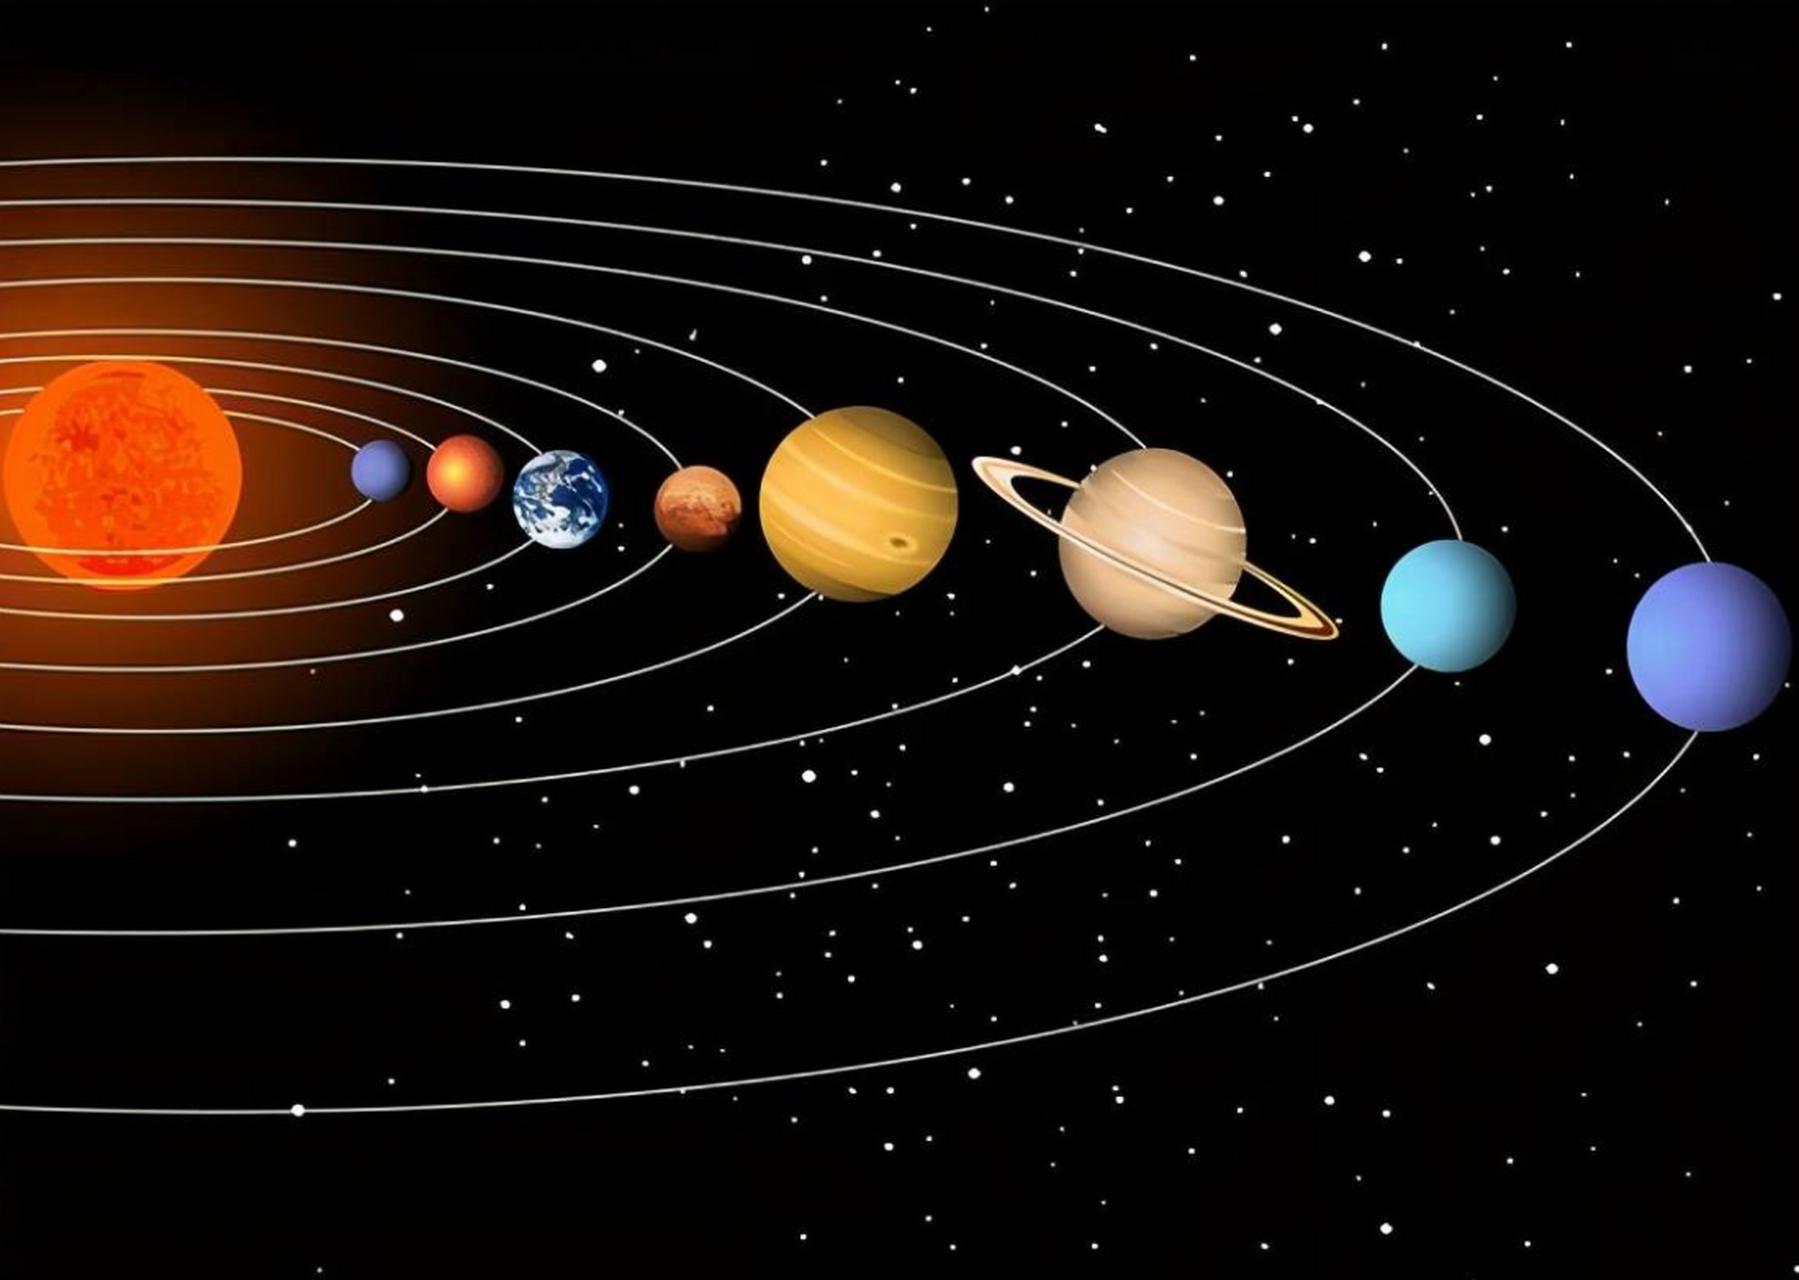 太阳系中九大行星各项之最 木星:质量最大的星行,为地球的318倍;体积